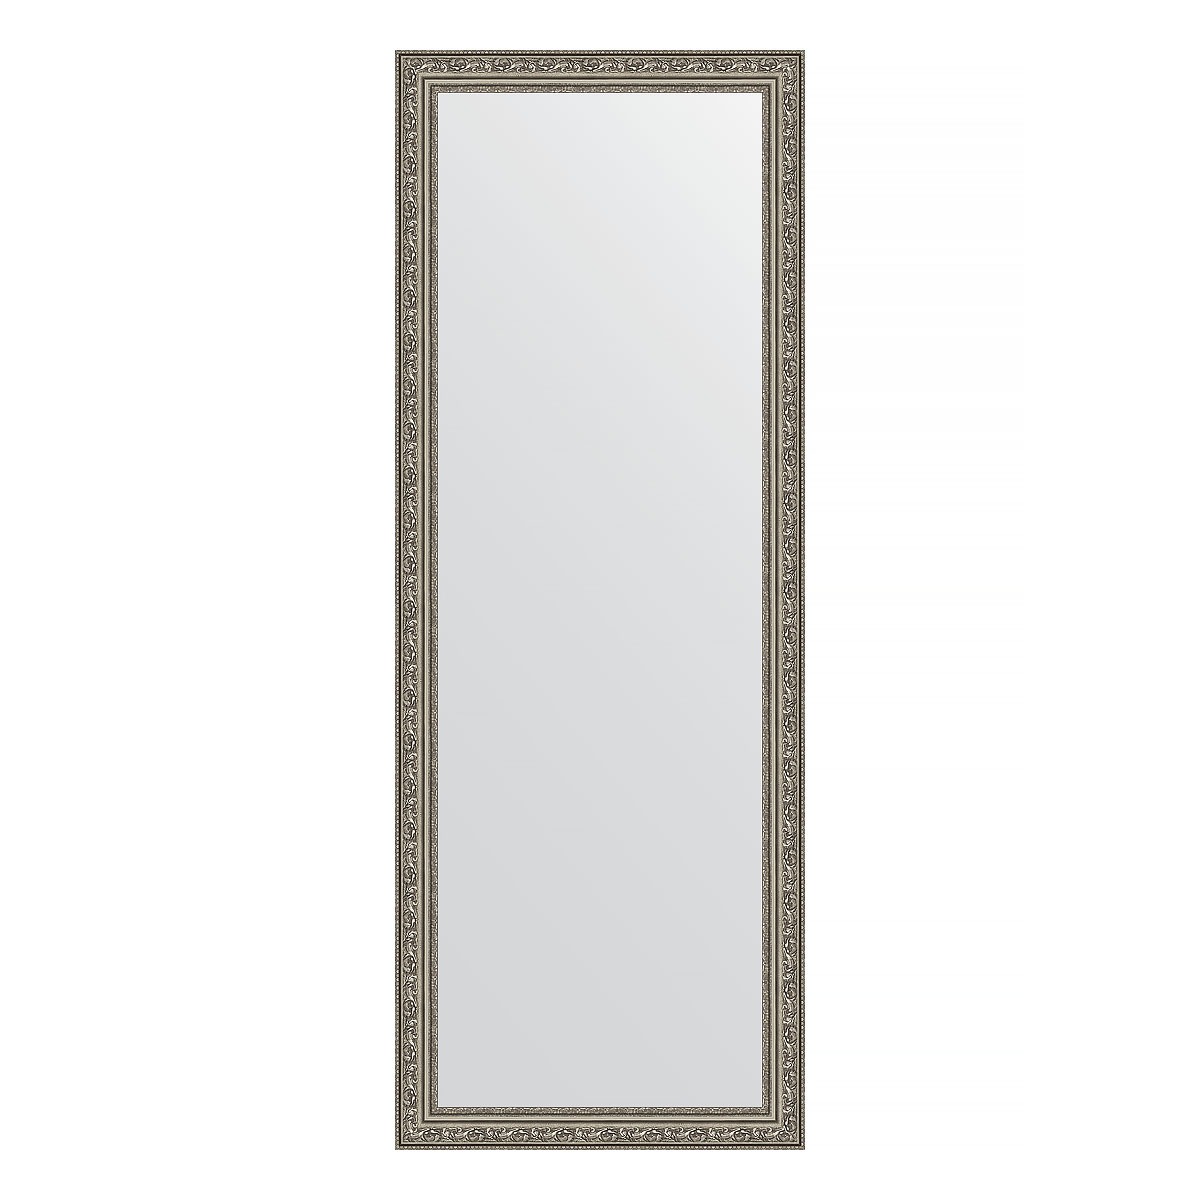 Зеркало в багетной раме Evoform виньетка состаренное серебро 56 мм 54х144 см зеркало 45х55 см виньетка античное серебро